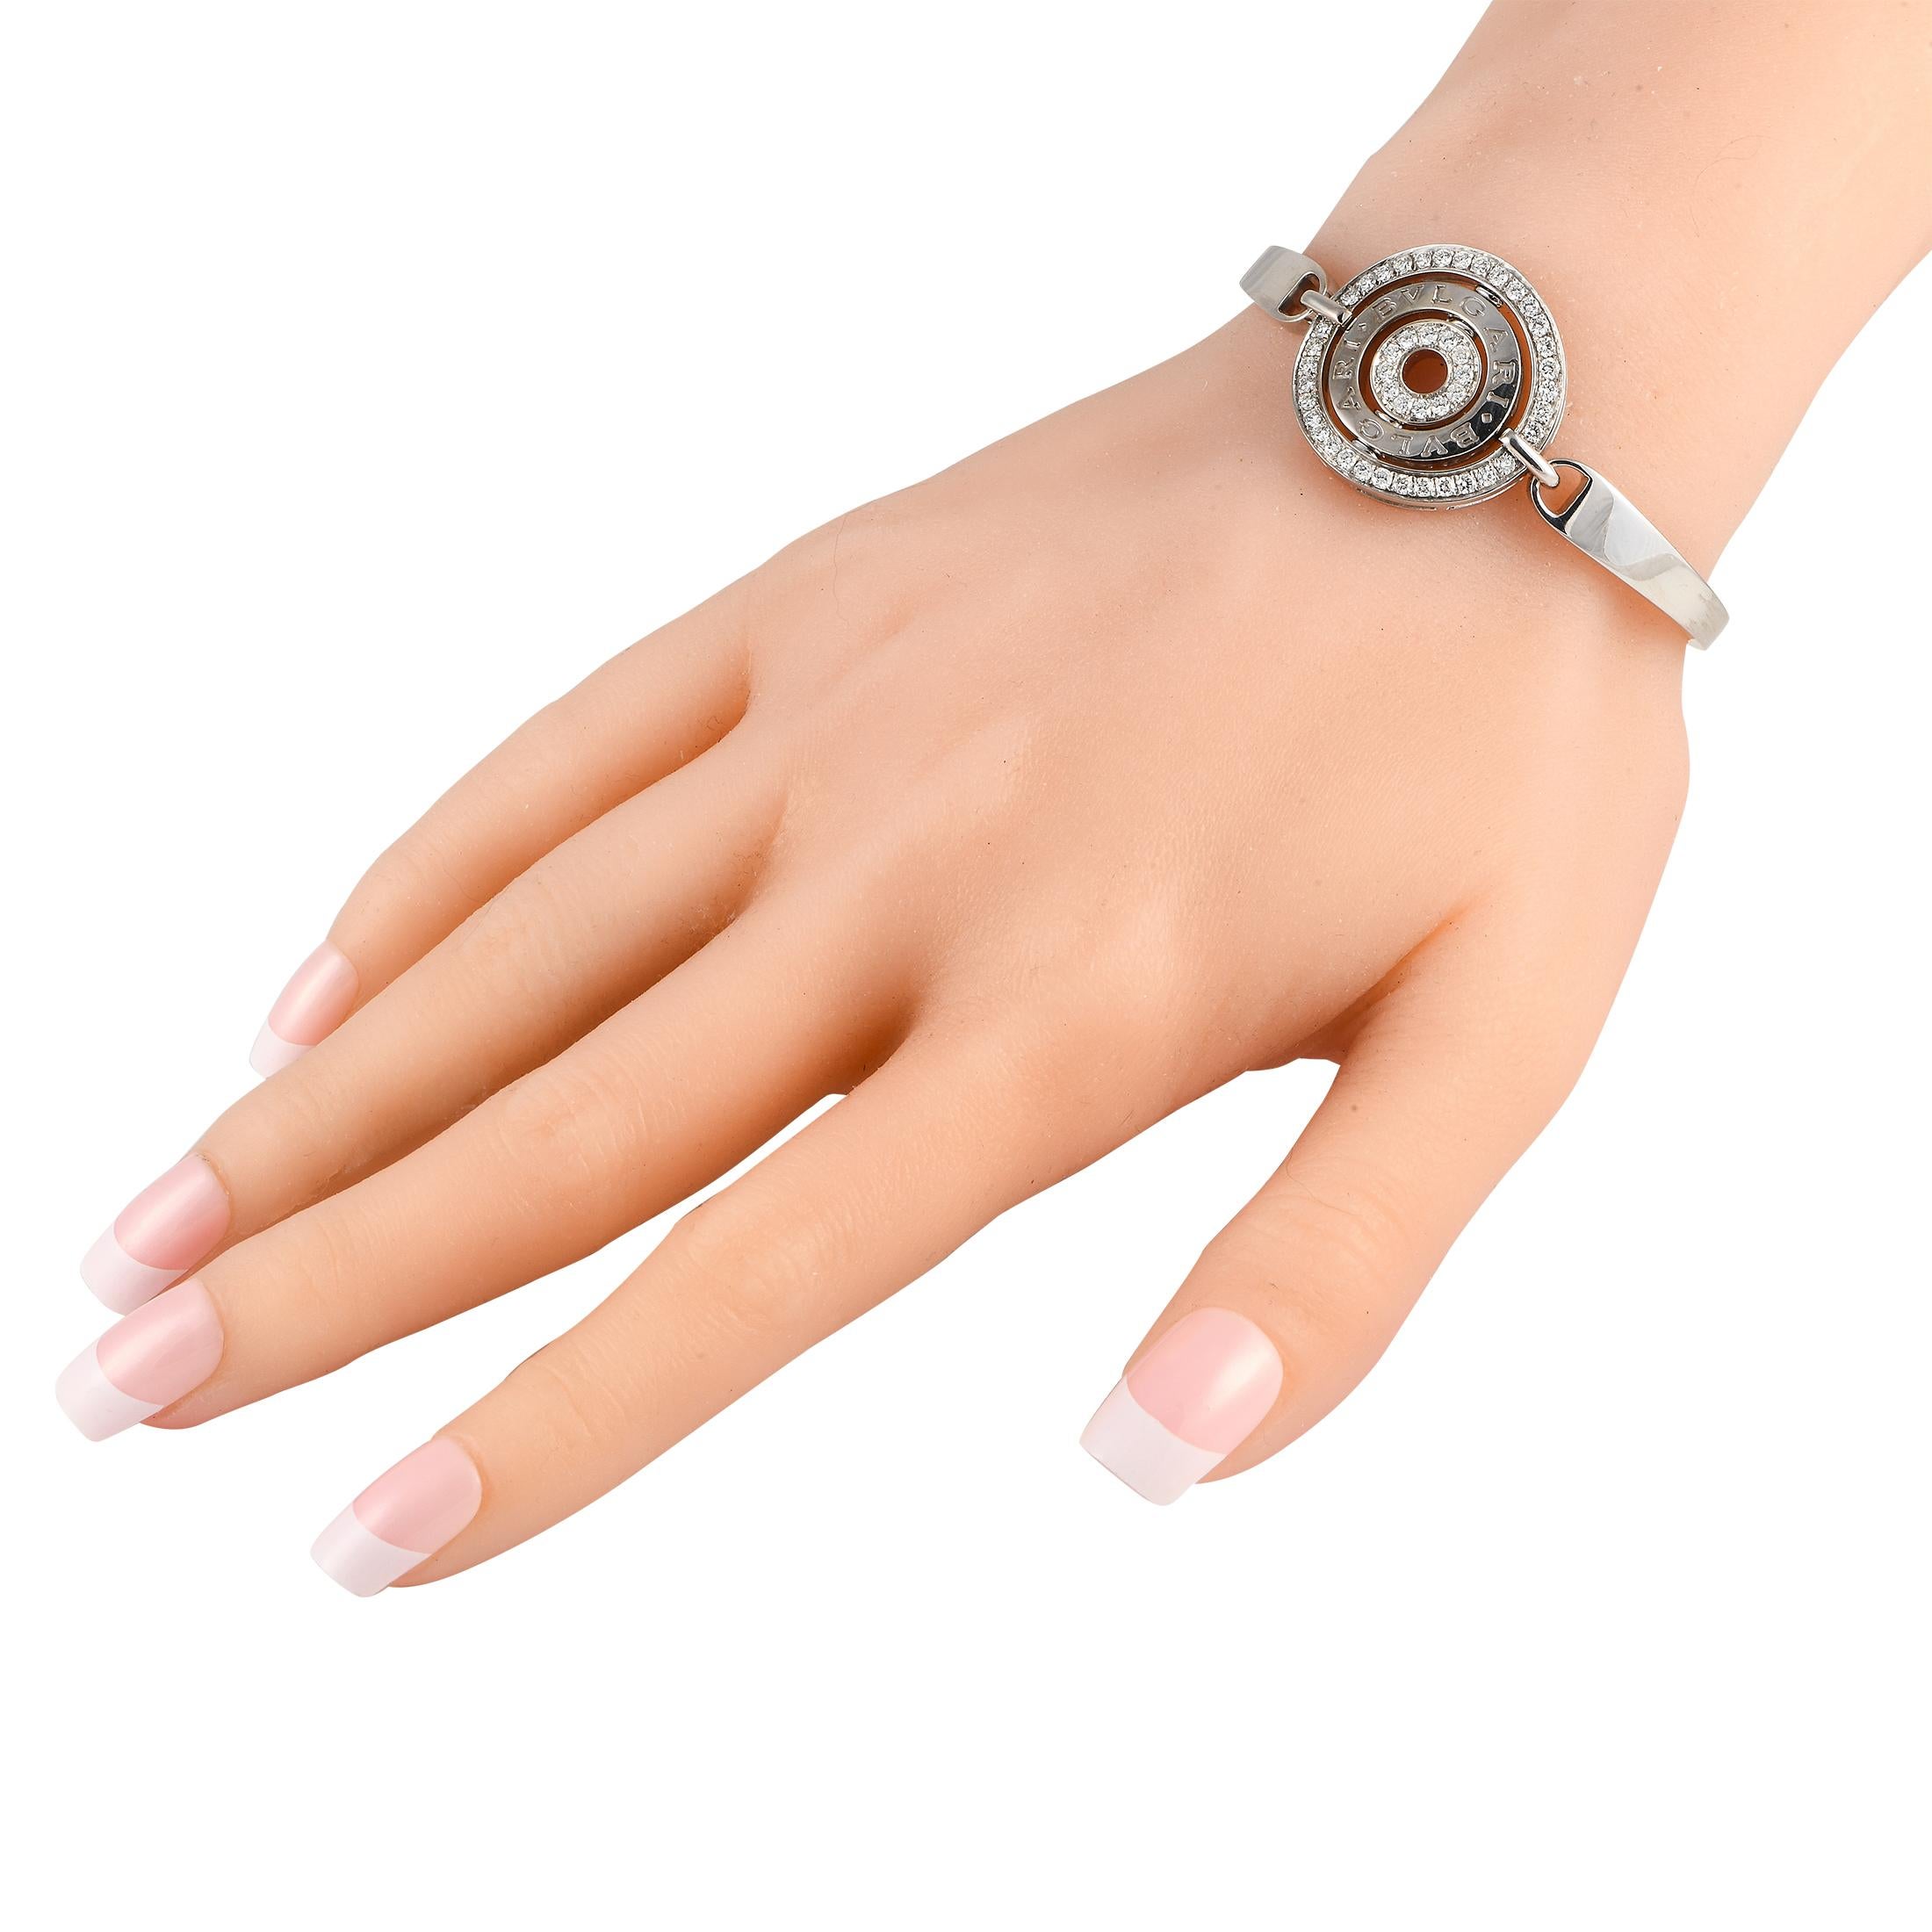 Ce bracelet Bvlgari Astral Cerchi est une pièce de luxe au style emblématique. Au centre de cette élégante monture en or blanc 18 carats, vous trouverez une pièce centrale circulaire ornée de la signature de la marque et de diamants étincelants